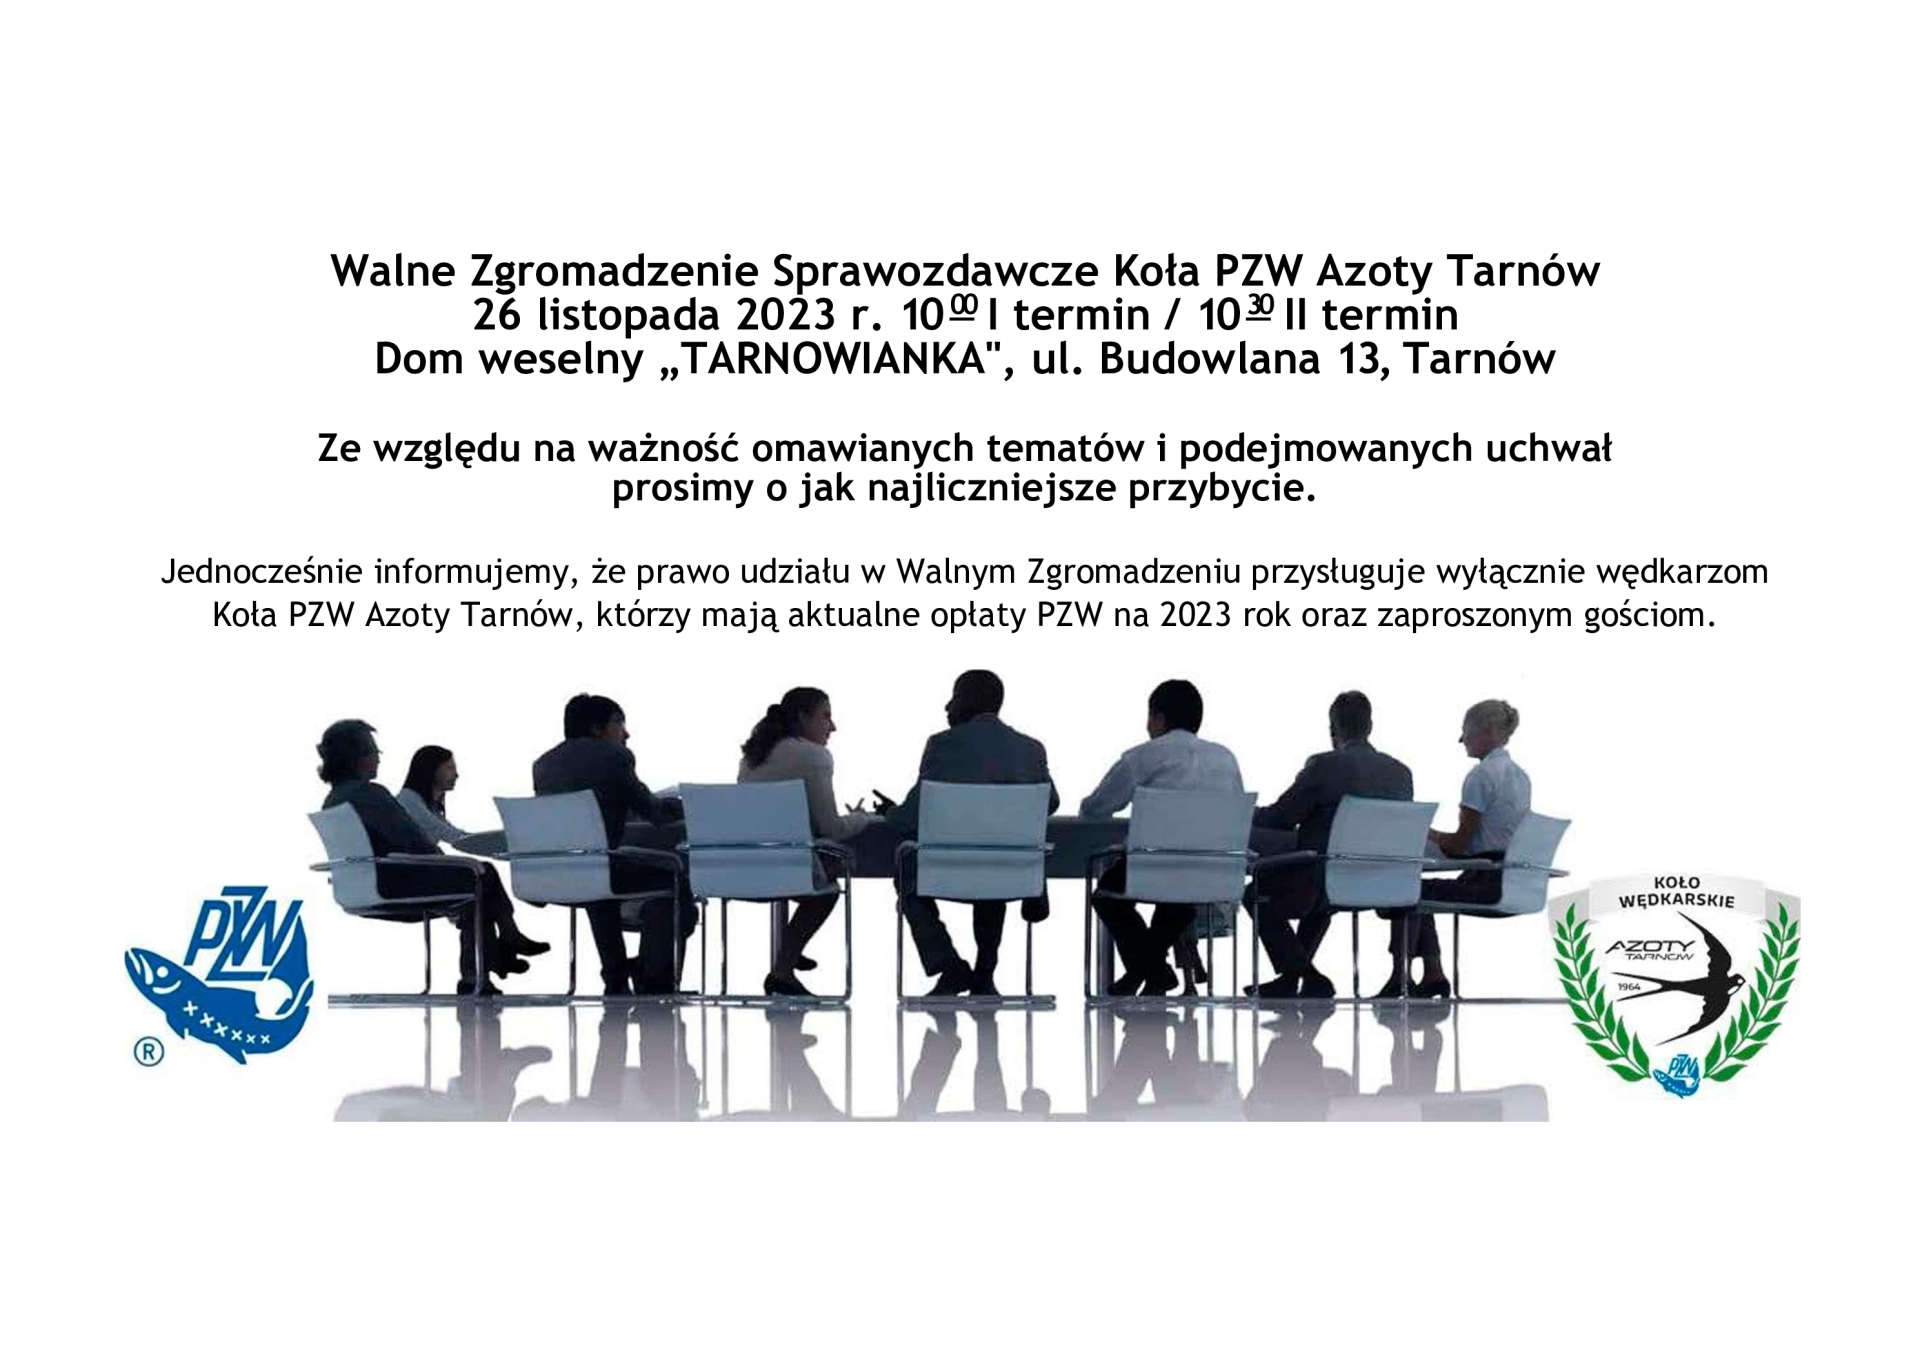 26.11.2023 - Walne Zebranie Sprawozdawcze Kola PZW Azoty Tarnów